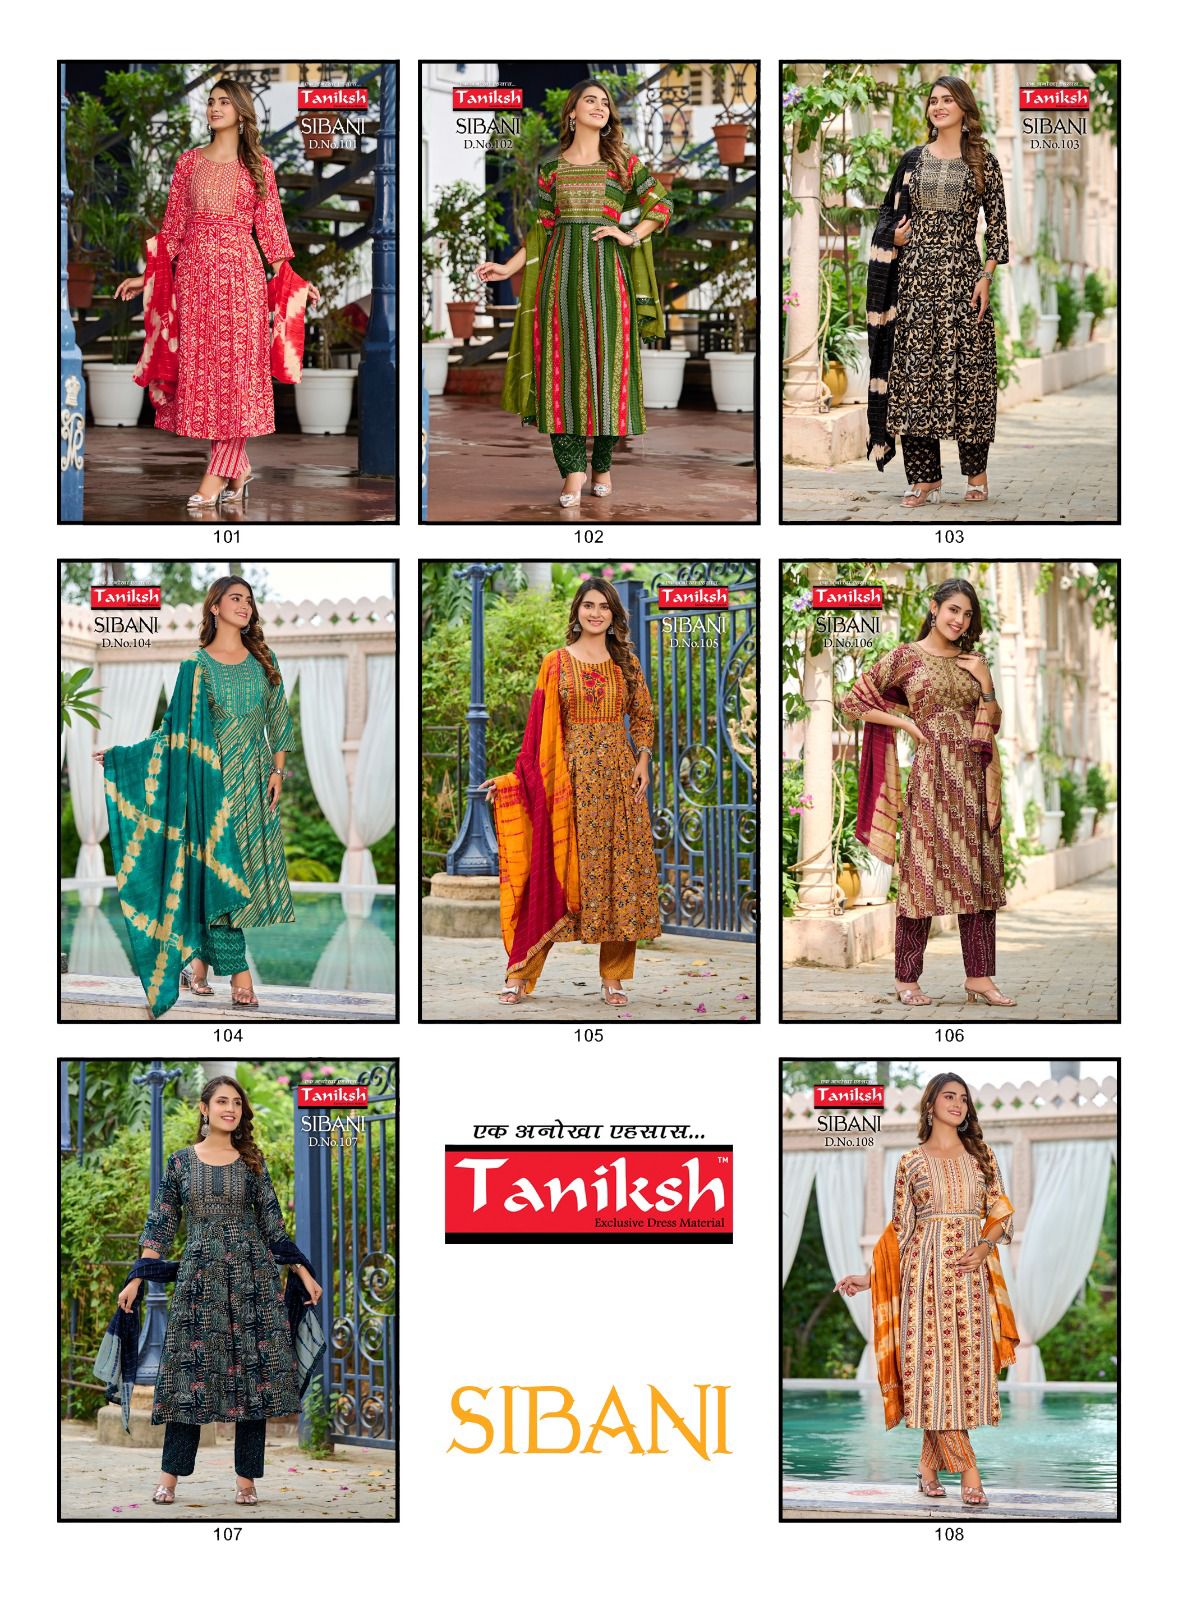 Taniksh Sibani Vol 1 collection 4